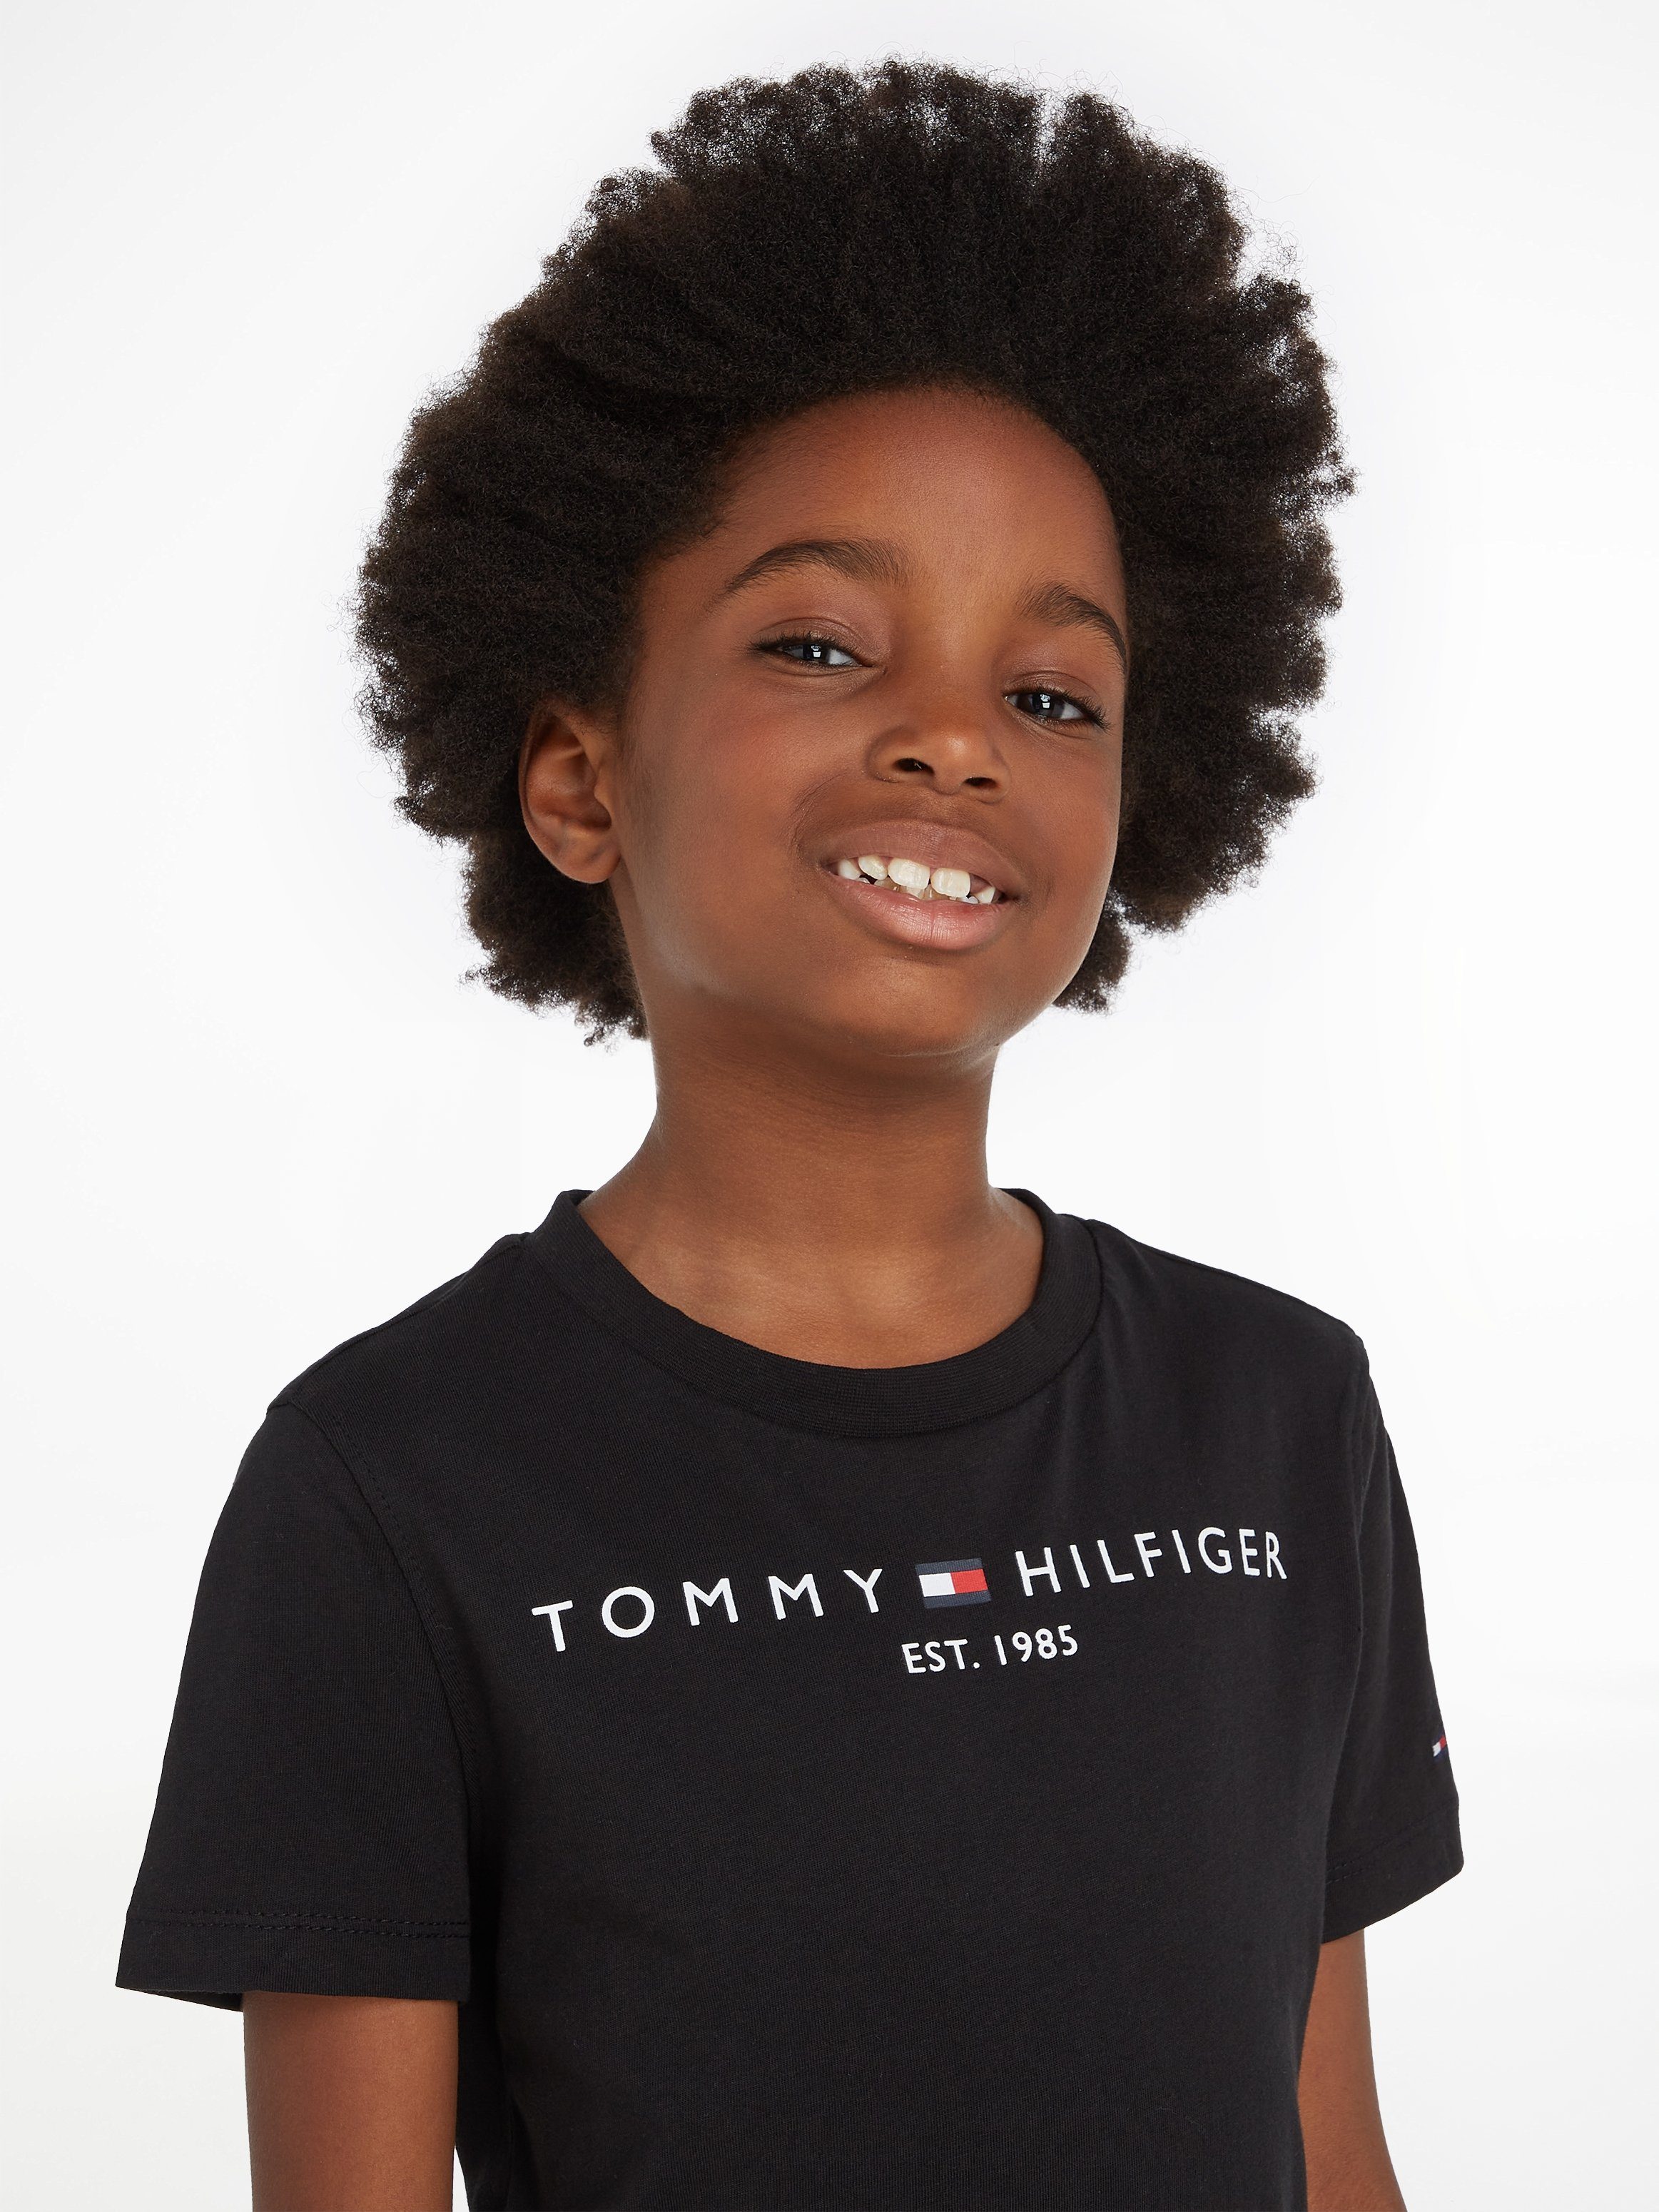 Tommy T-Shirt ESSENTIAL Jungen Mädchen Hilfiger für TEE und